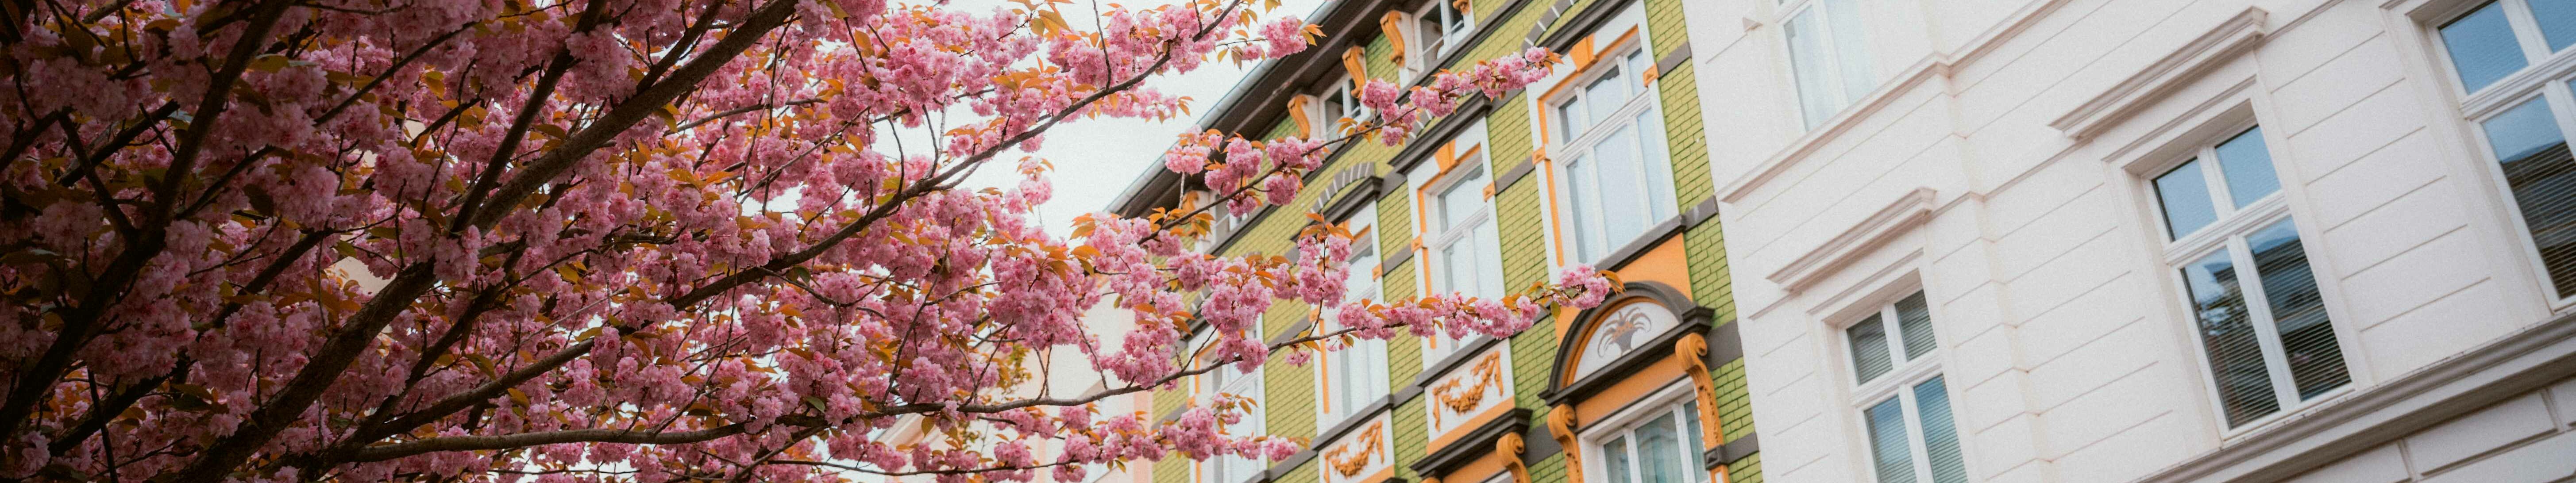 Altbauten in Bonn mit einem blühenden Kirschbaum davor